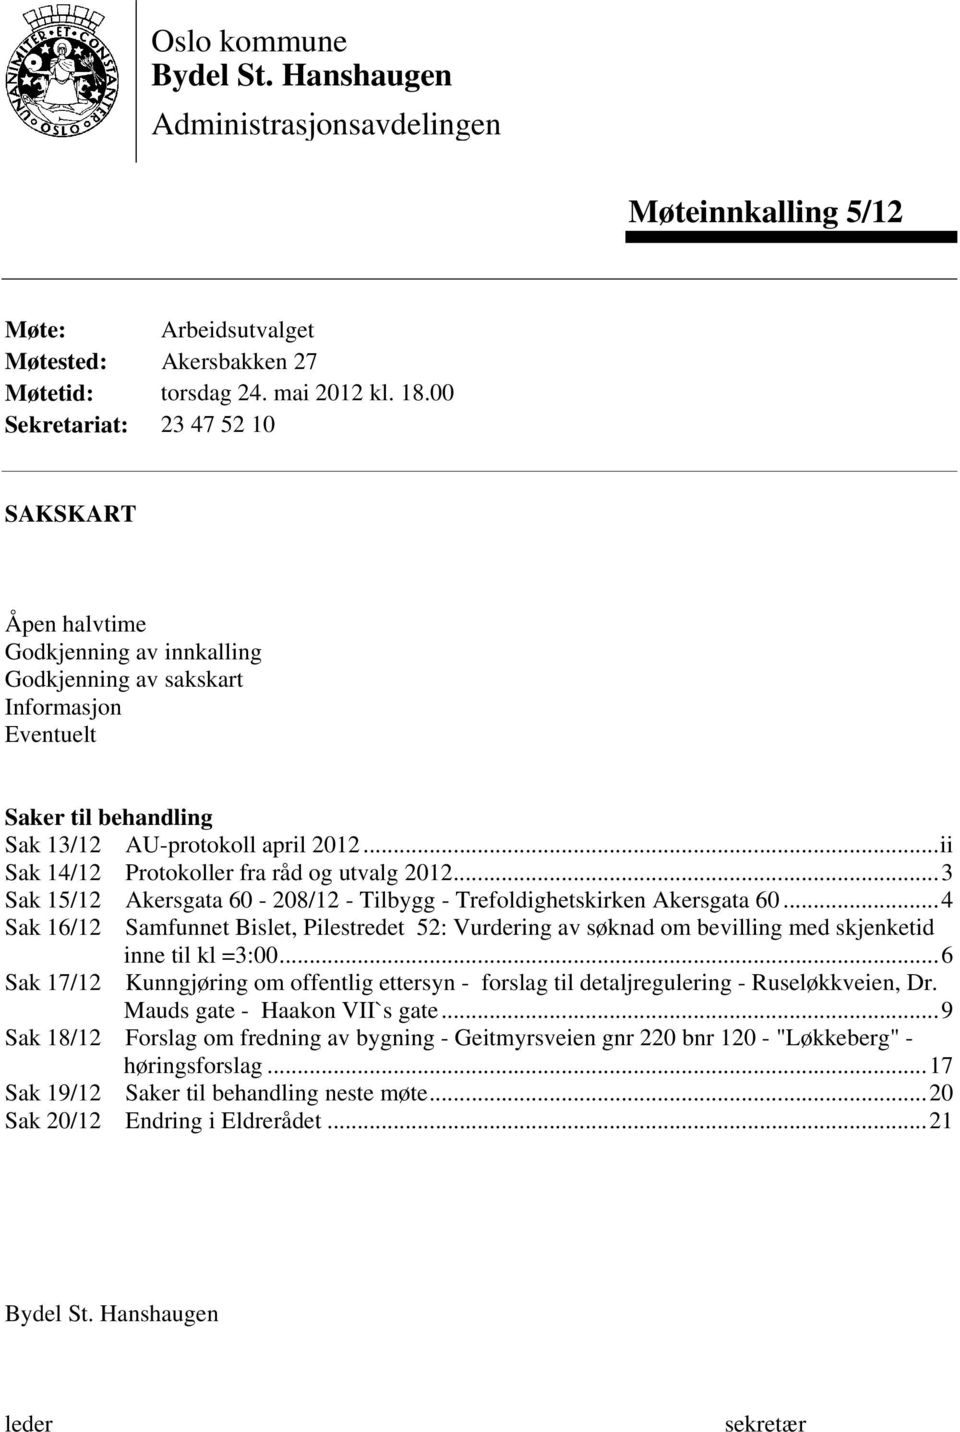 ..ii Sak 14/12 Protokoller fra råd og utvalg 2012...3 Sak 15/12 Akersgata 60-208/12 - Tilbygg - Trefoldighetskirken Akersgata 60.